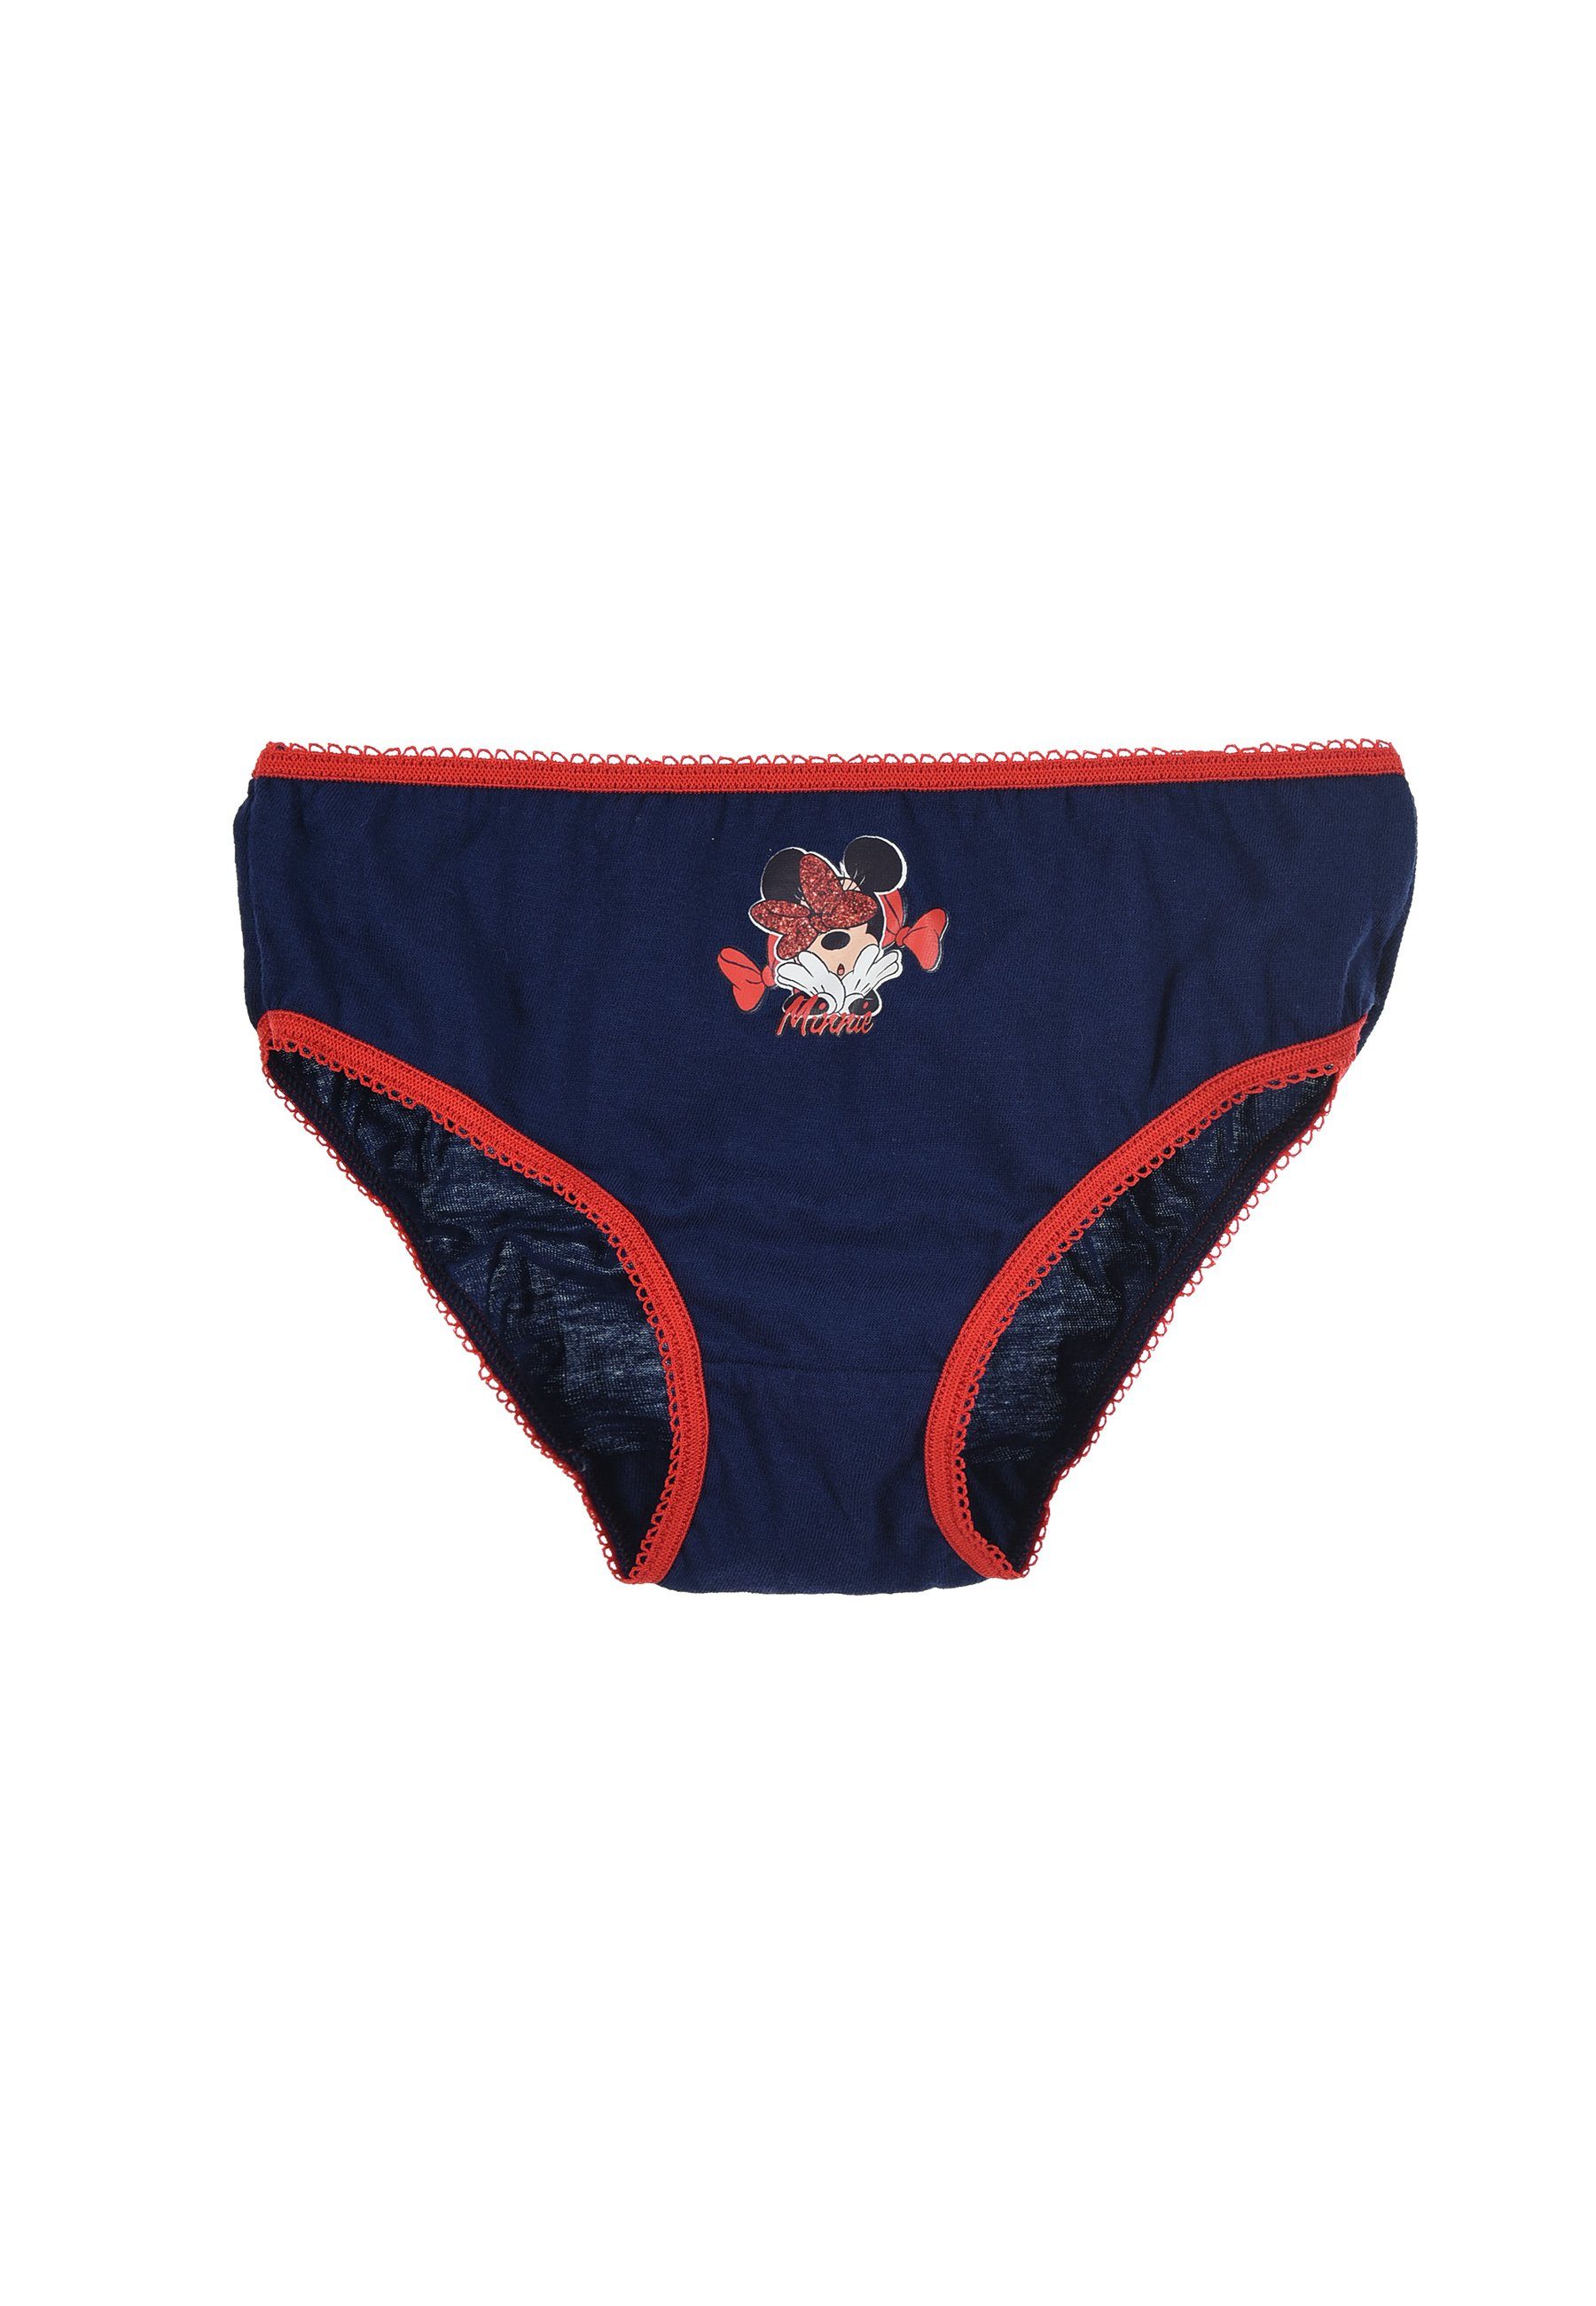 Wäsche/Bademode Unterwäsche Disney Minnie Mouse Slip Kinder Mädchen Unterhosen Schlüpfer (3 Stück)